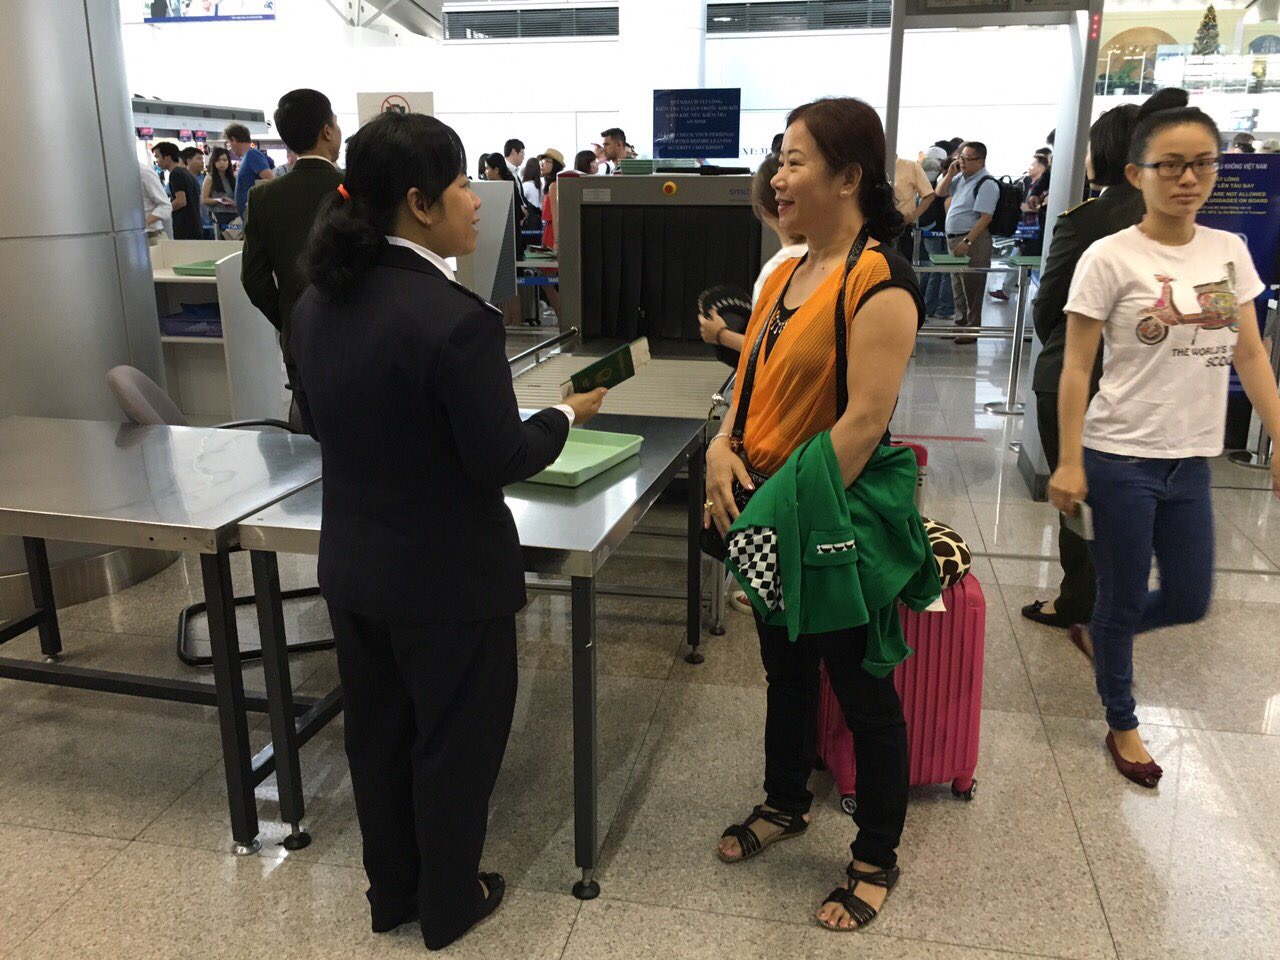 Sân bay Tân Sơn Nhất thực hiện soi chiếu hải quan và kiểm tra an ninh chung một cửa  - Ảnh: Đình Mười